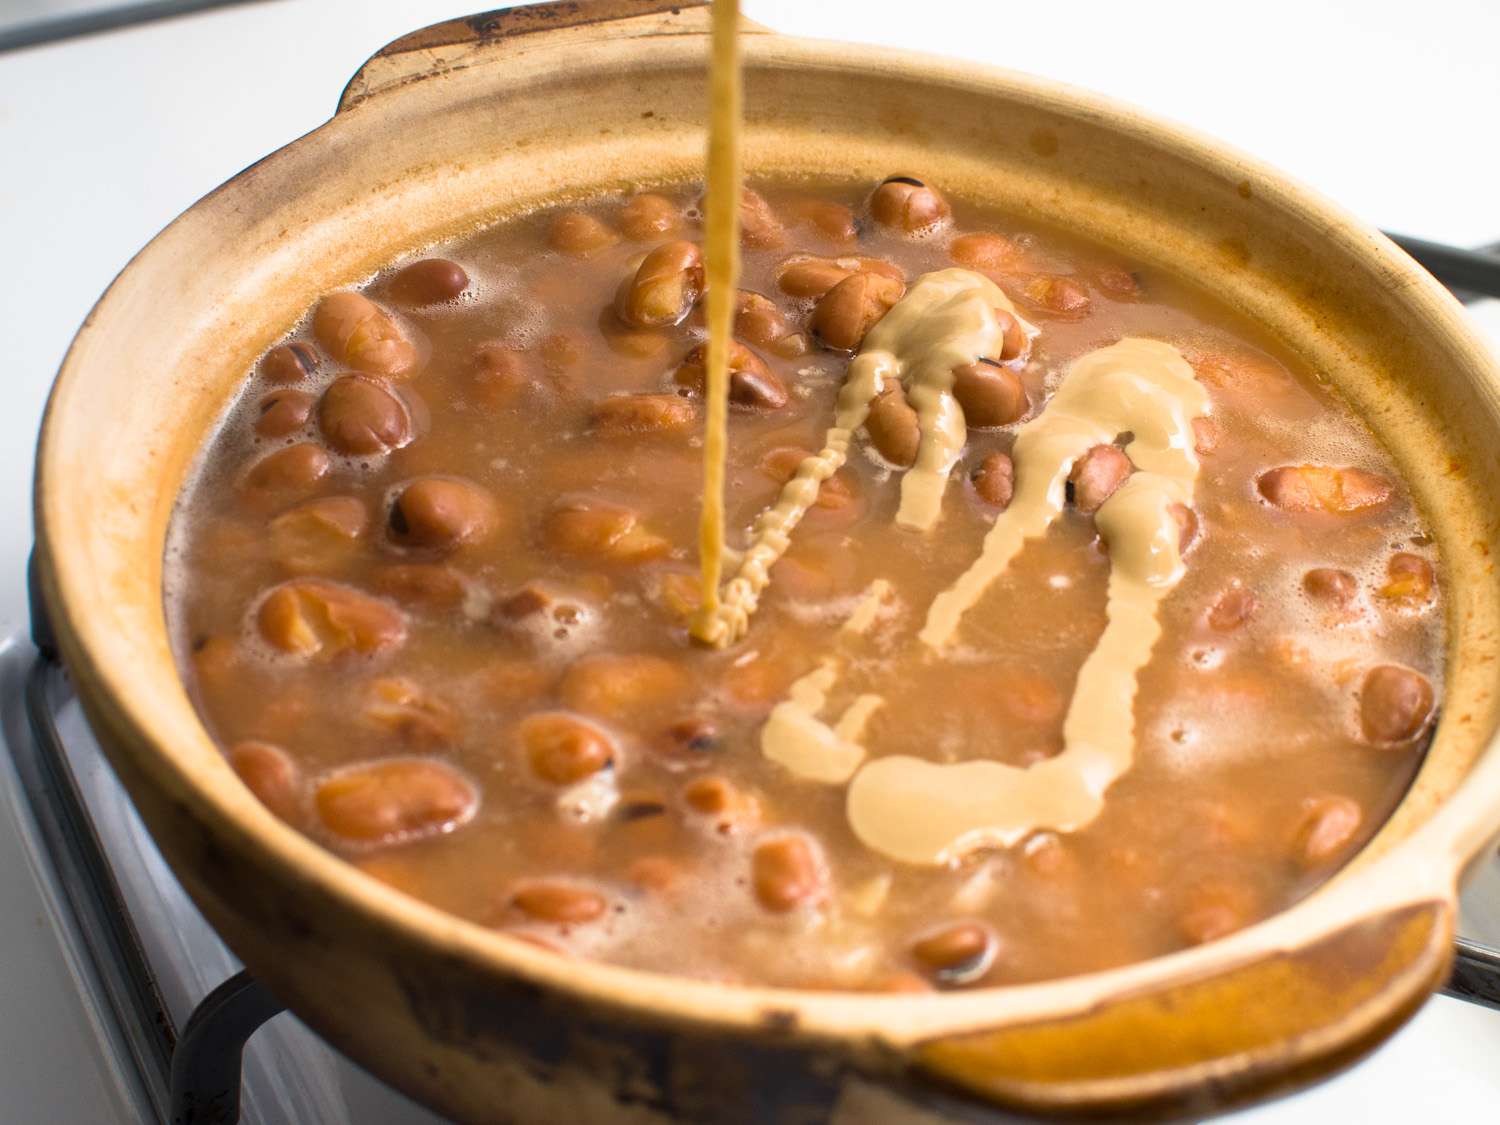 芝麻酱添加到一锅炖蚕豆。